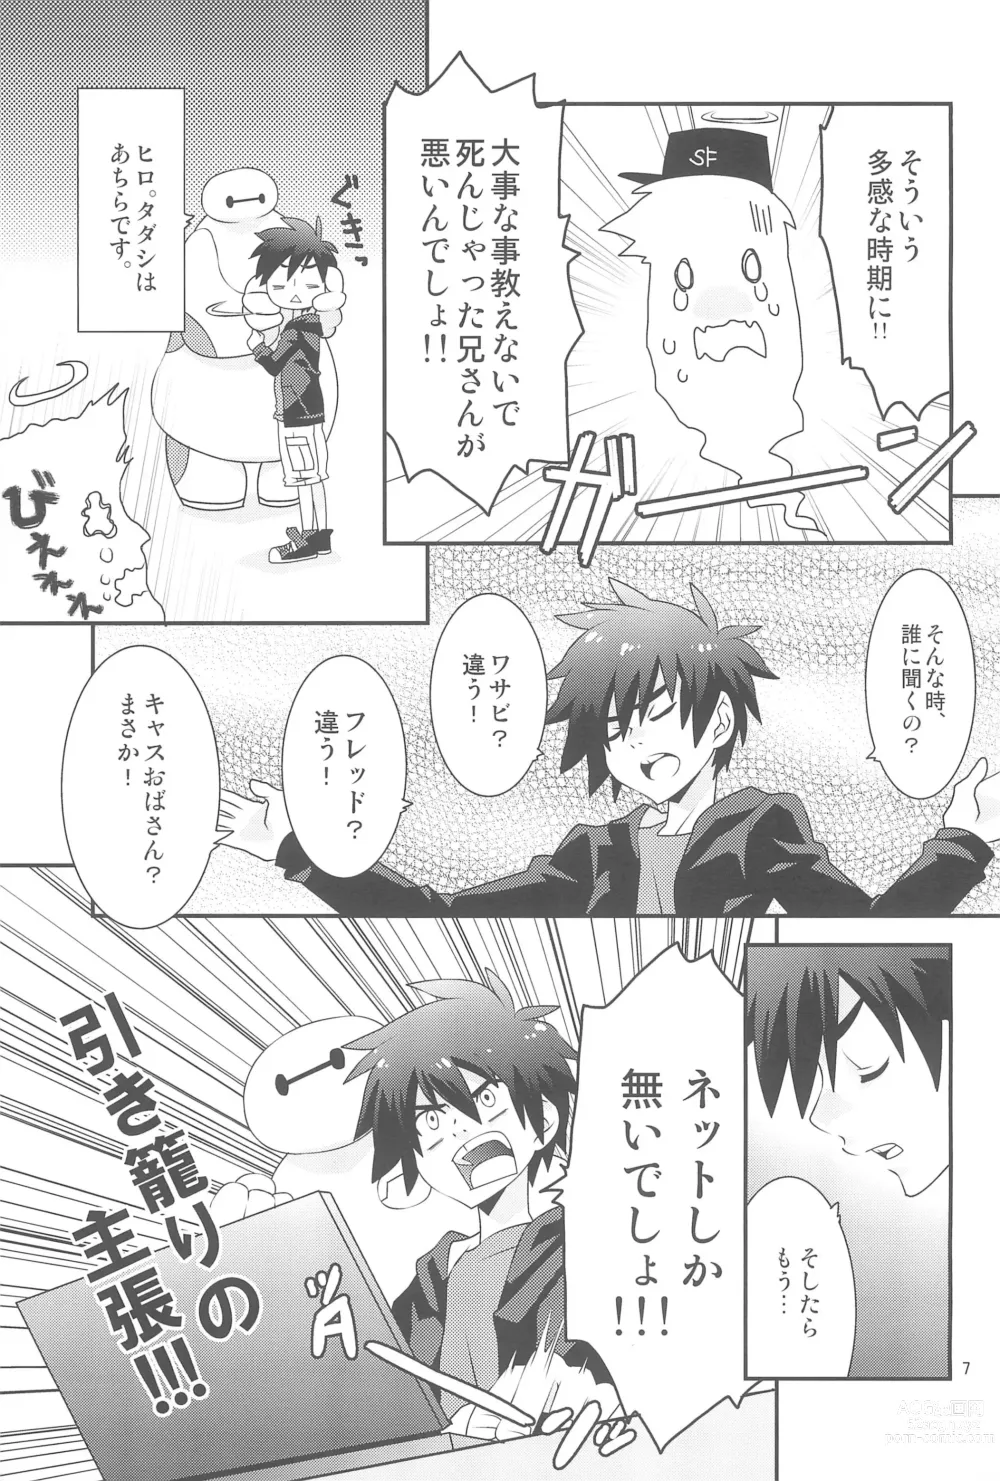 Page 7 of doujinshi Hiro-kun no Hajimete.